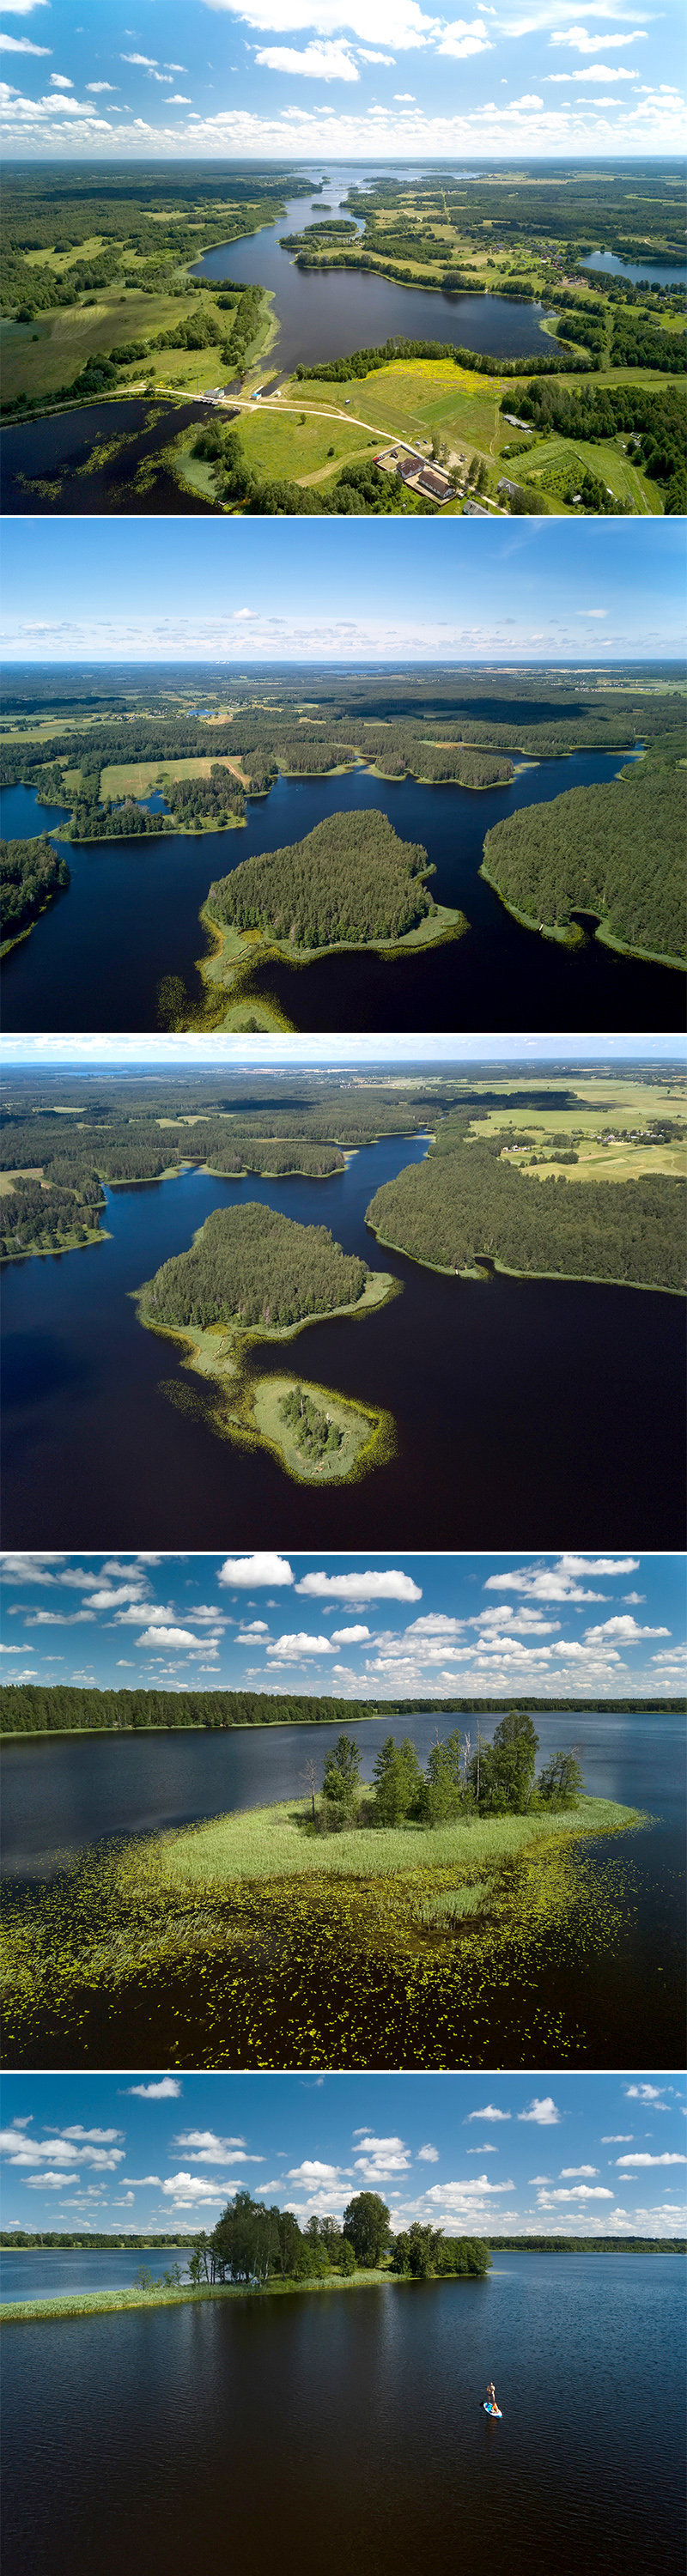 Lake Dolgoye in the Braslav Lakes National Park